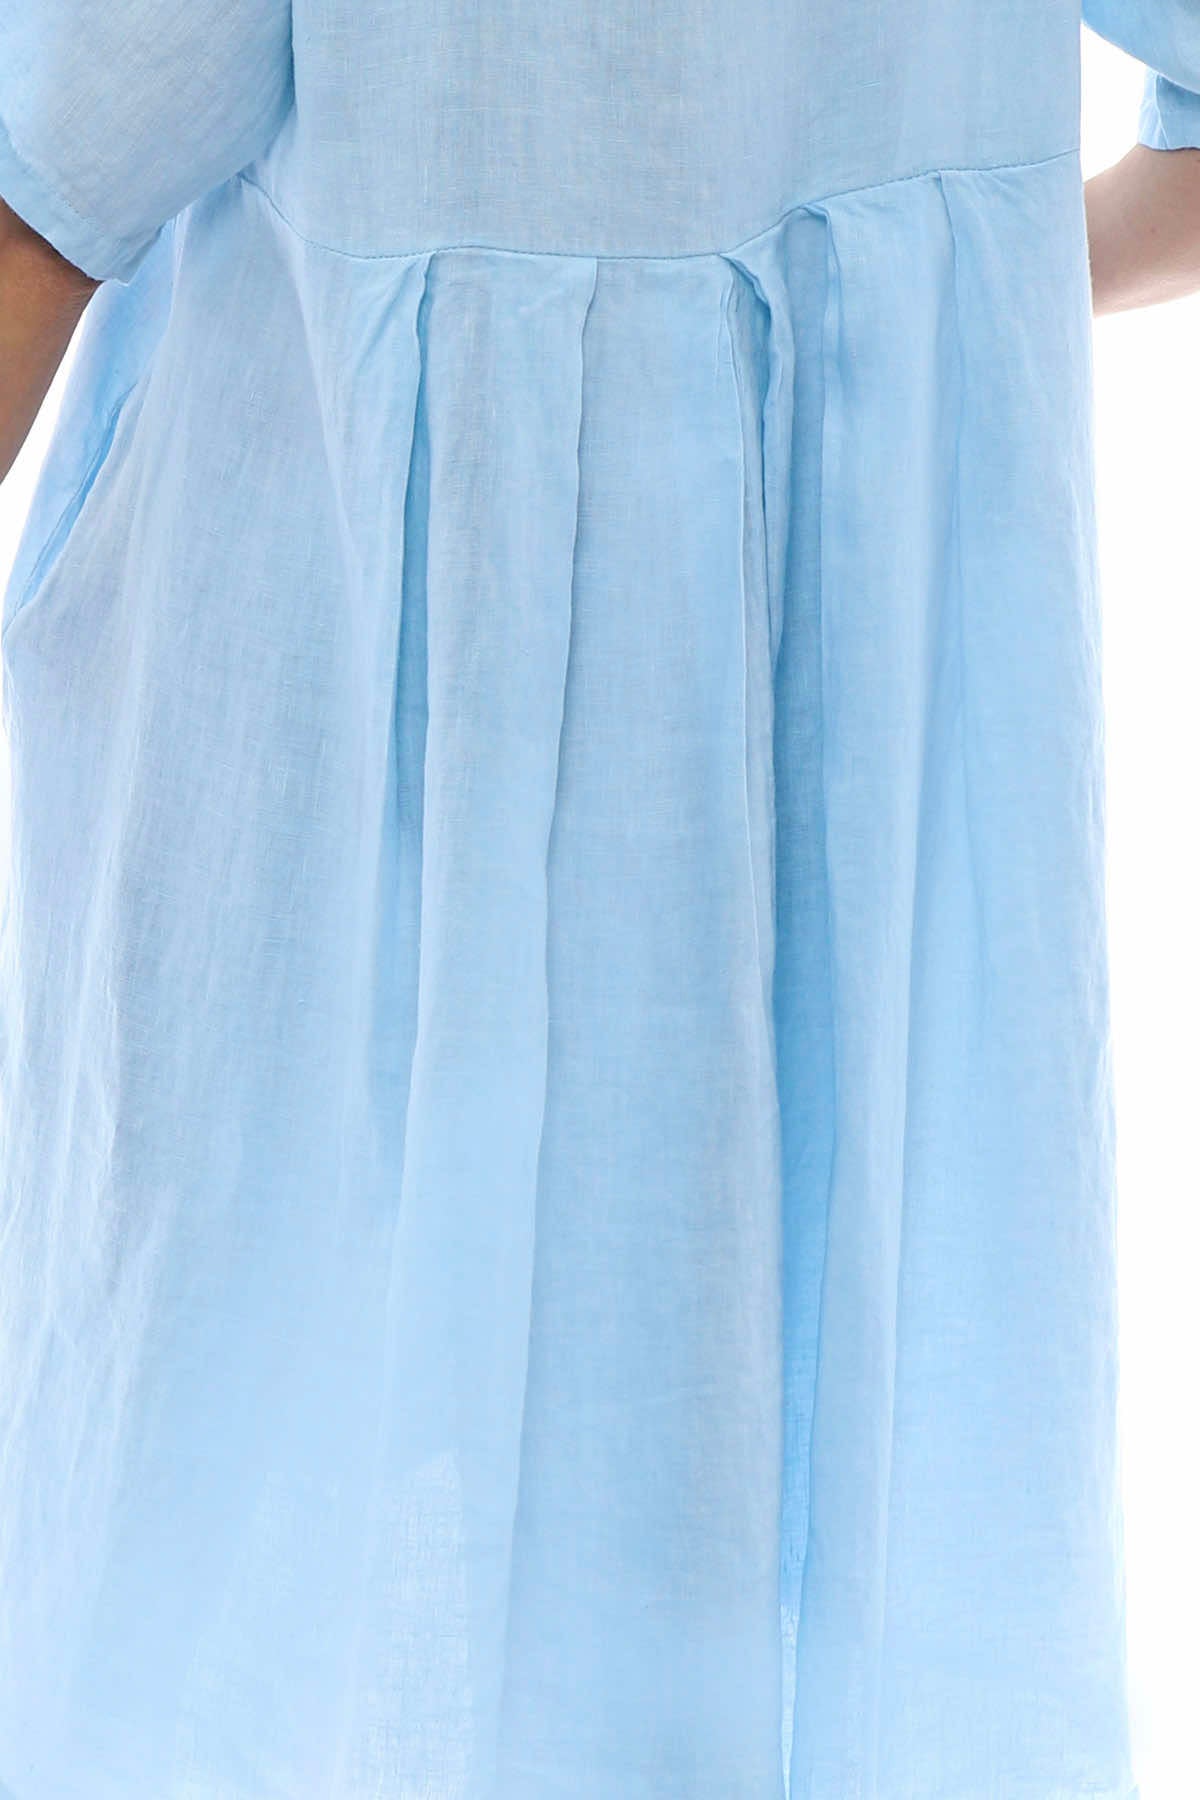 Padstow Button Linen Dress Light Blue